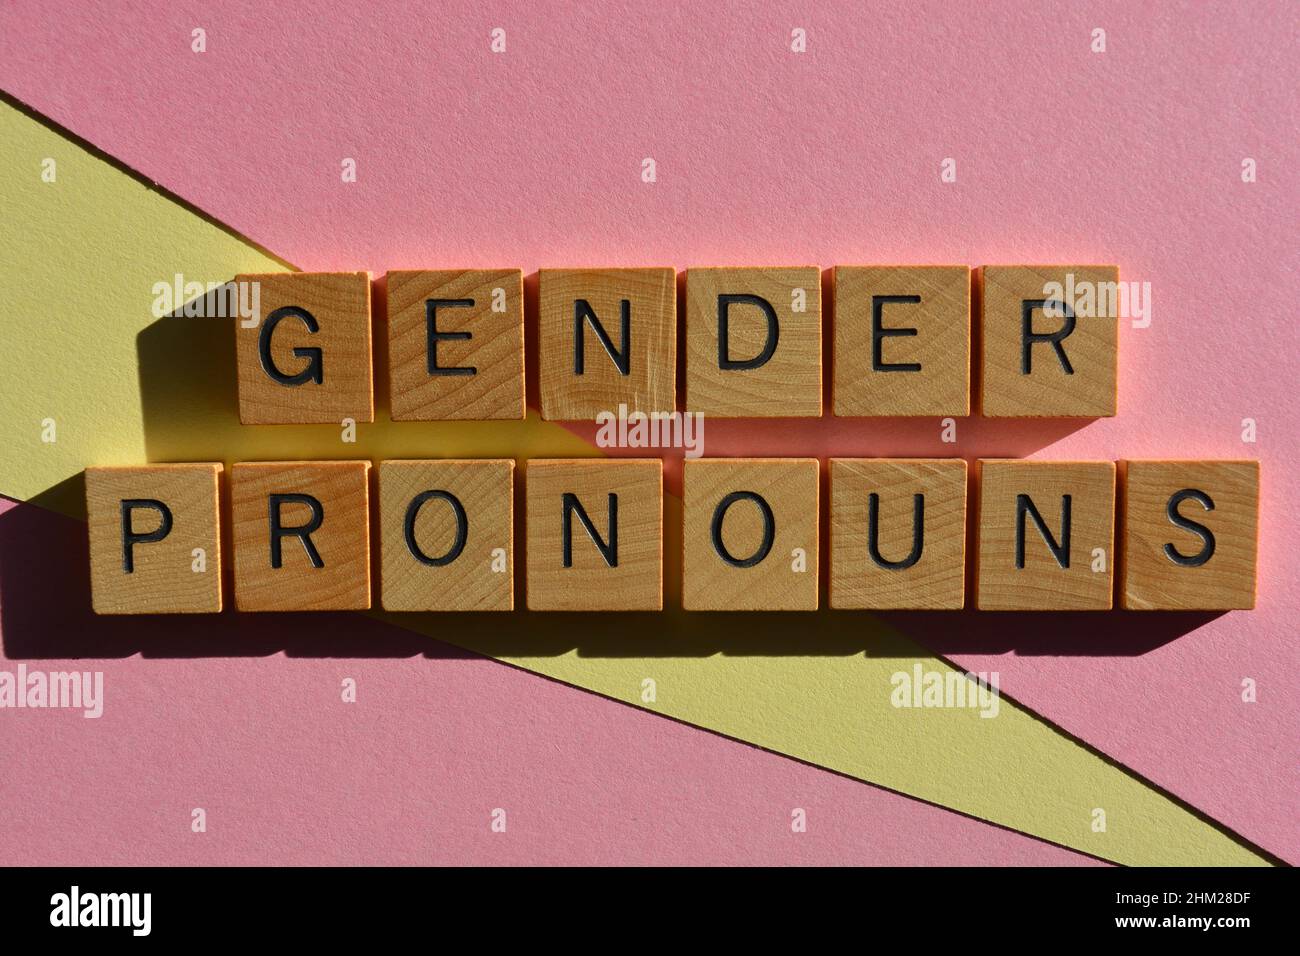 Pronomi di genere, parole in lettere di legno isolate su sfondo rosa e giallo Foto Stock